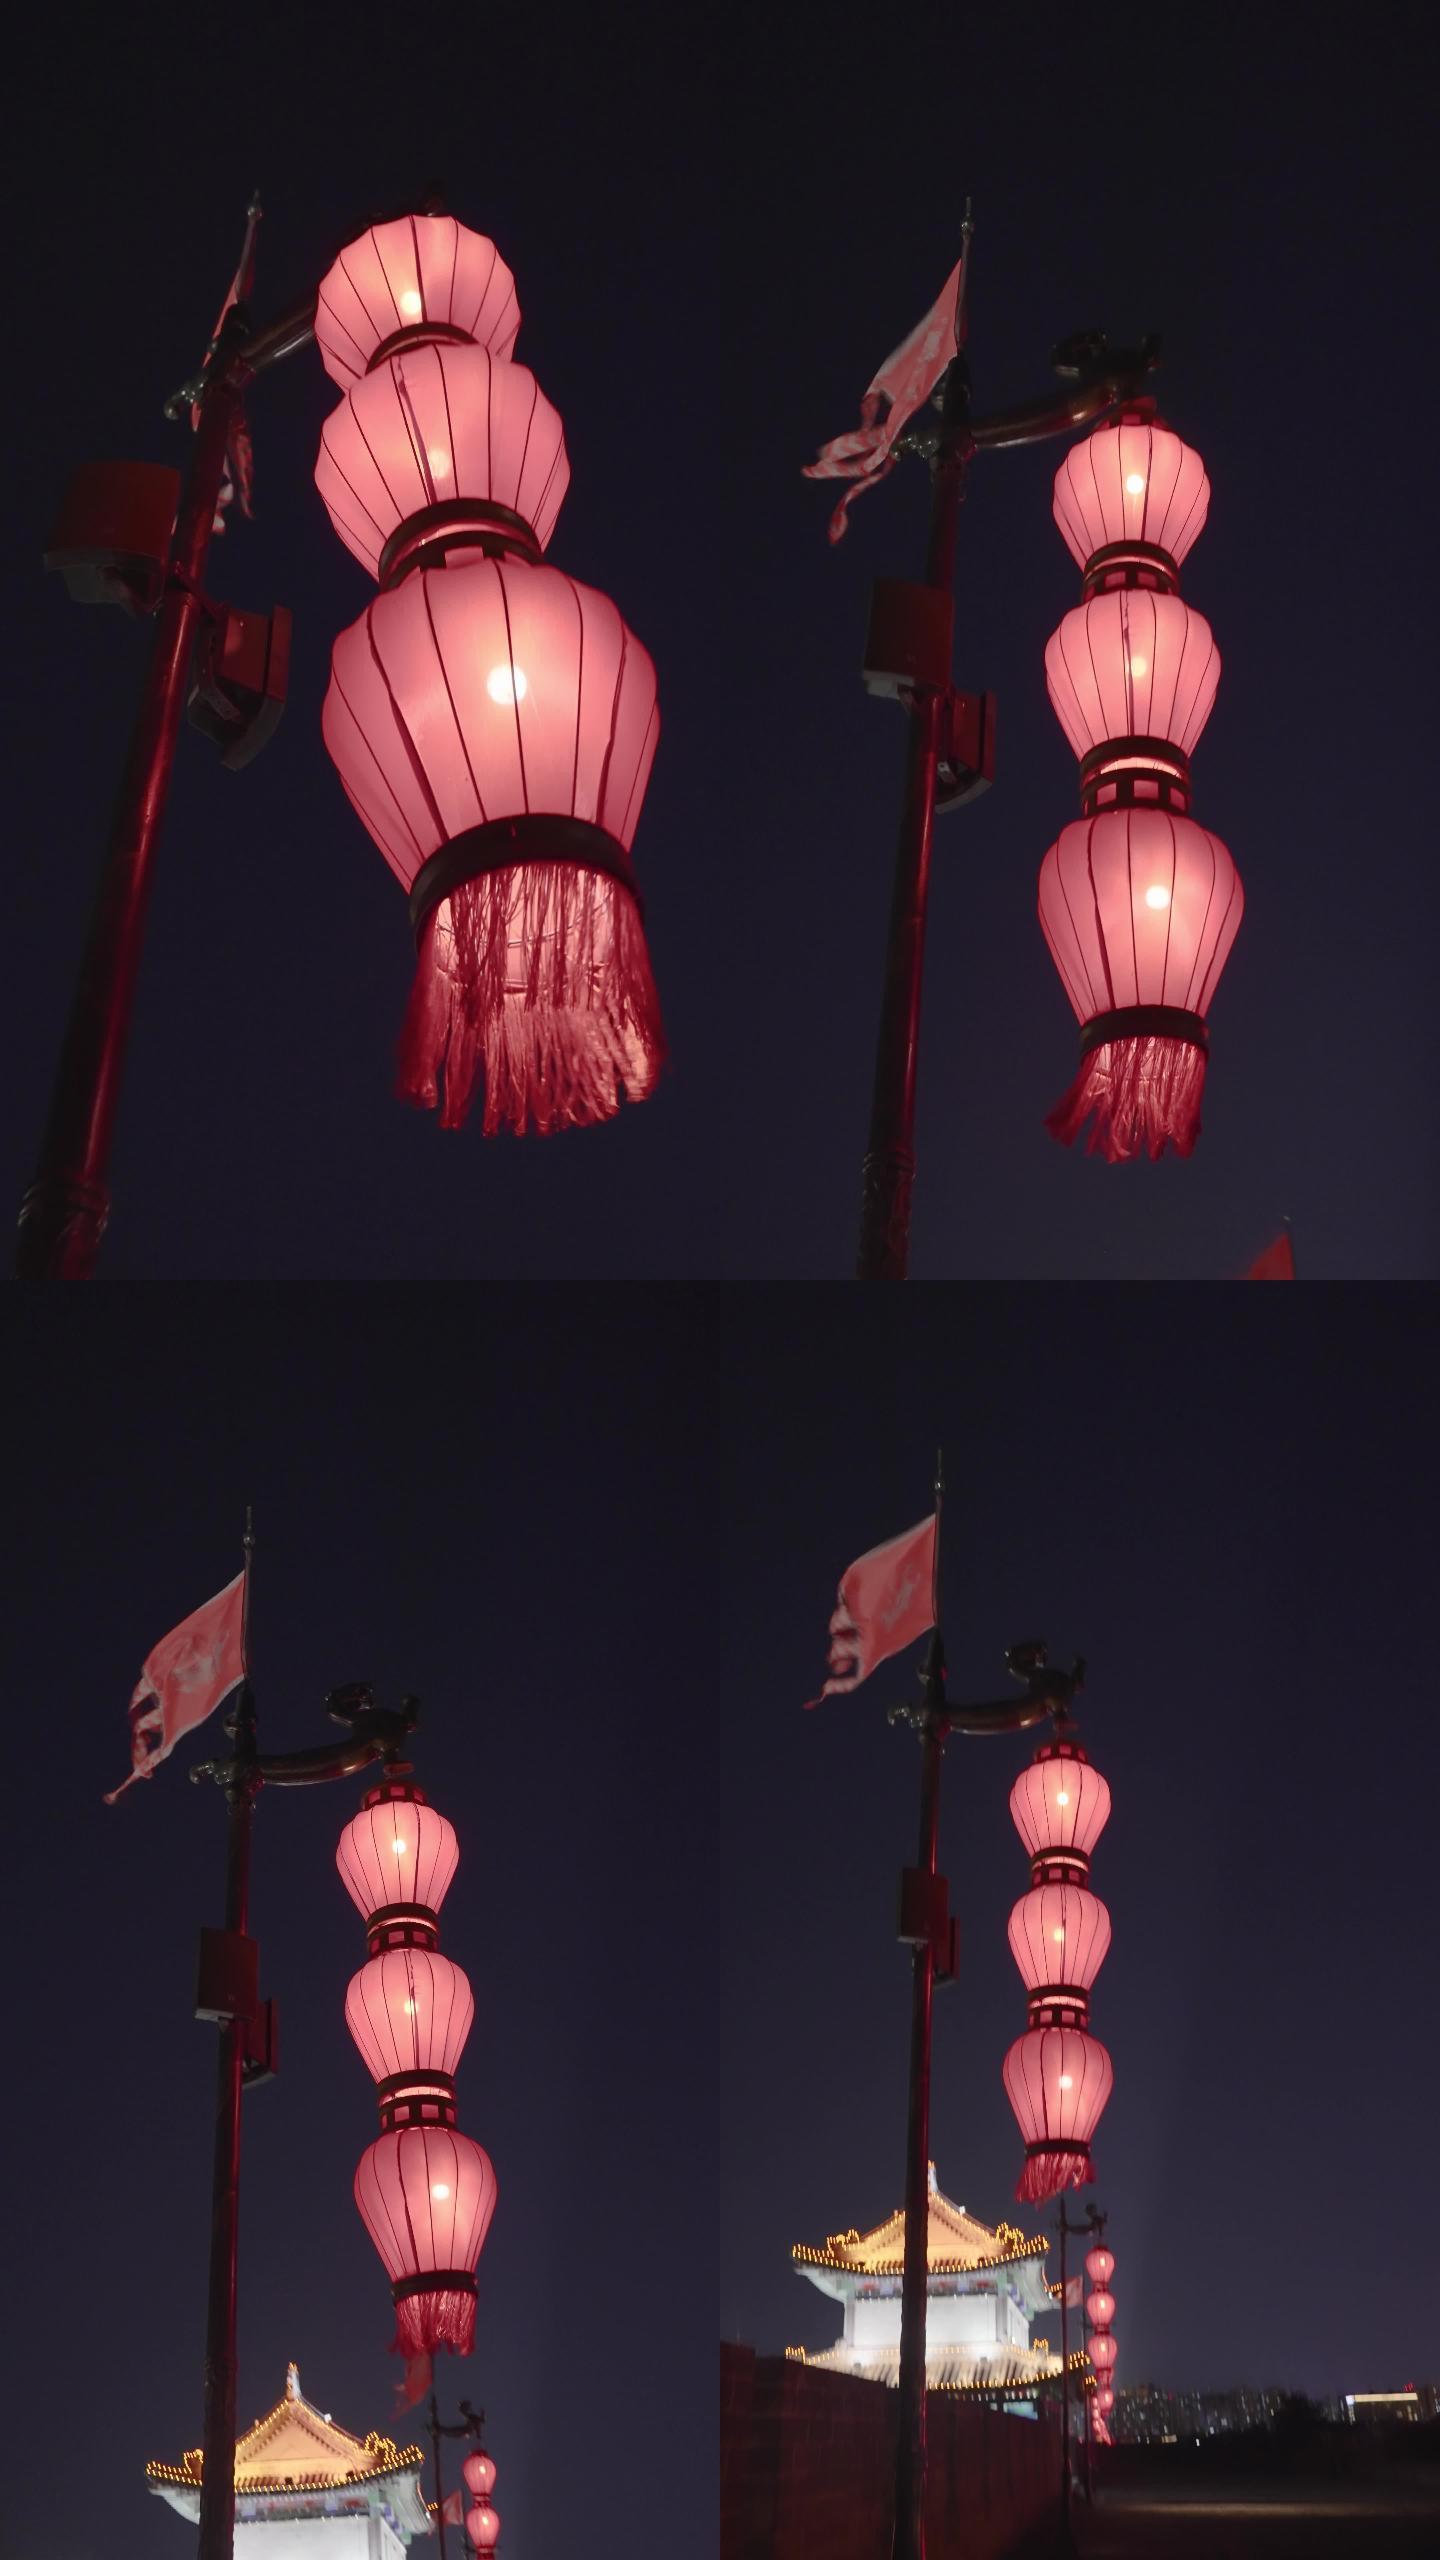 晚上古城墙顶上的灯笼/中国陕西西安